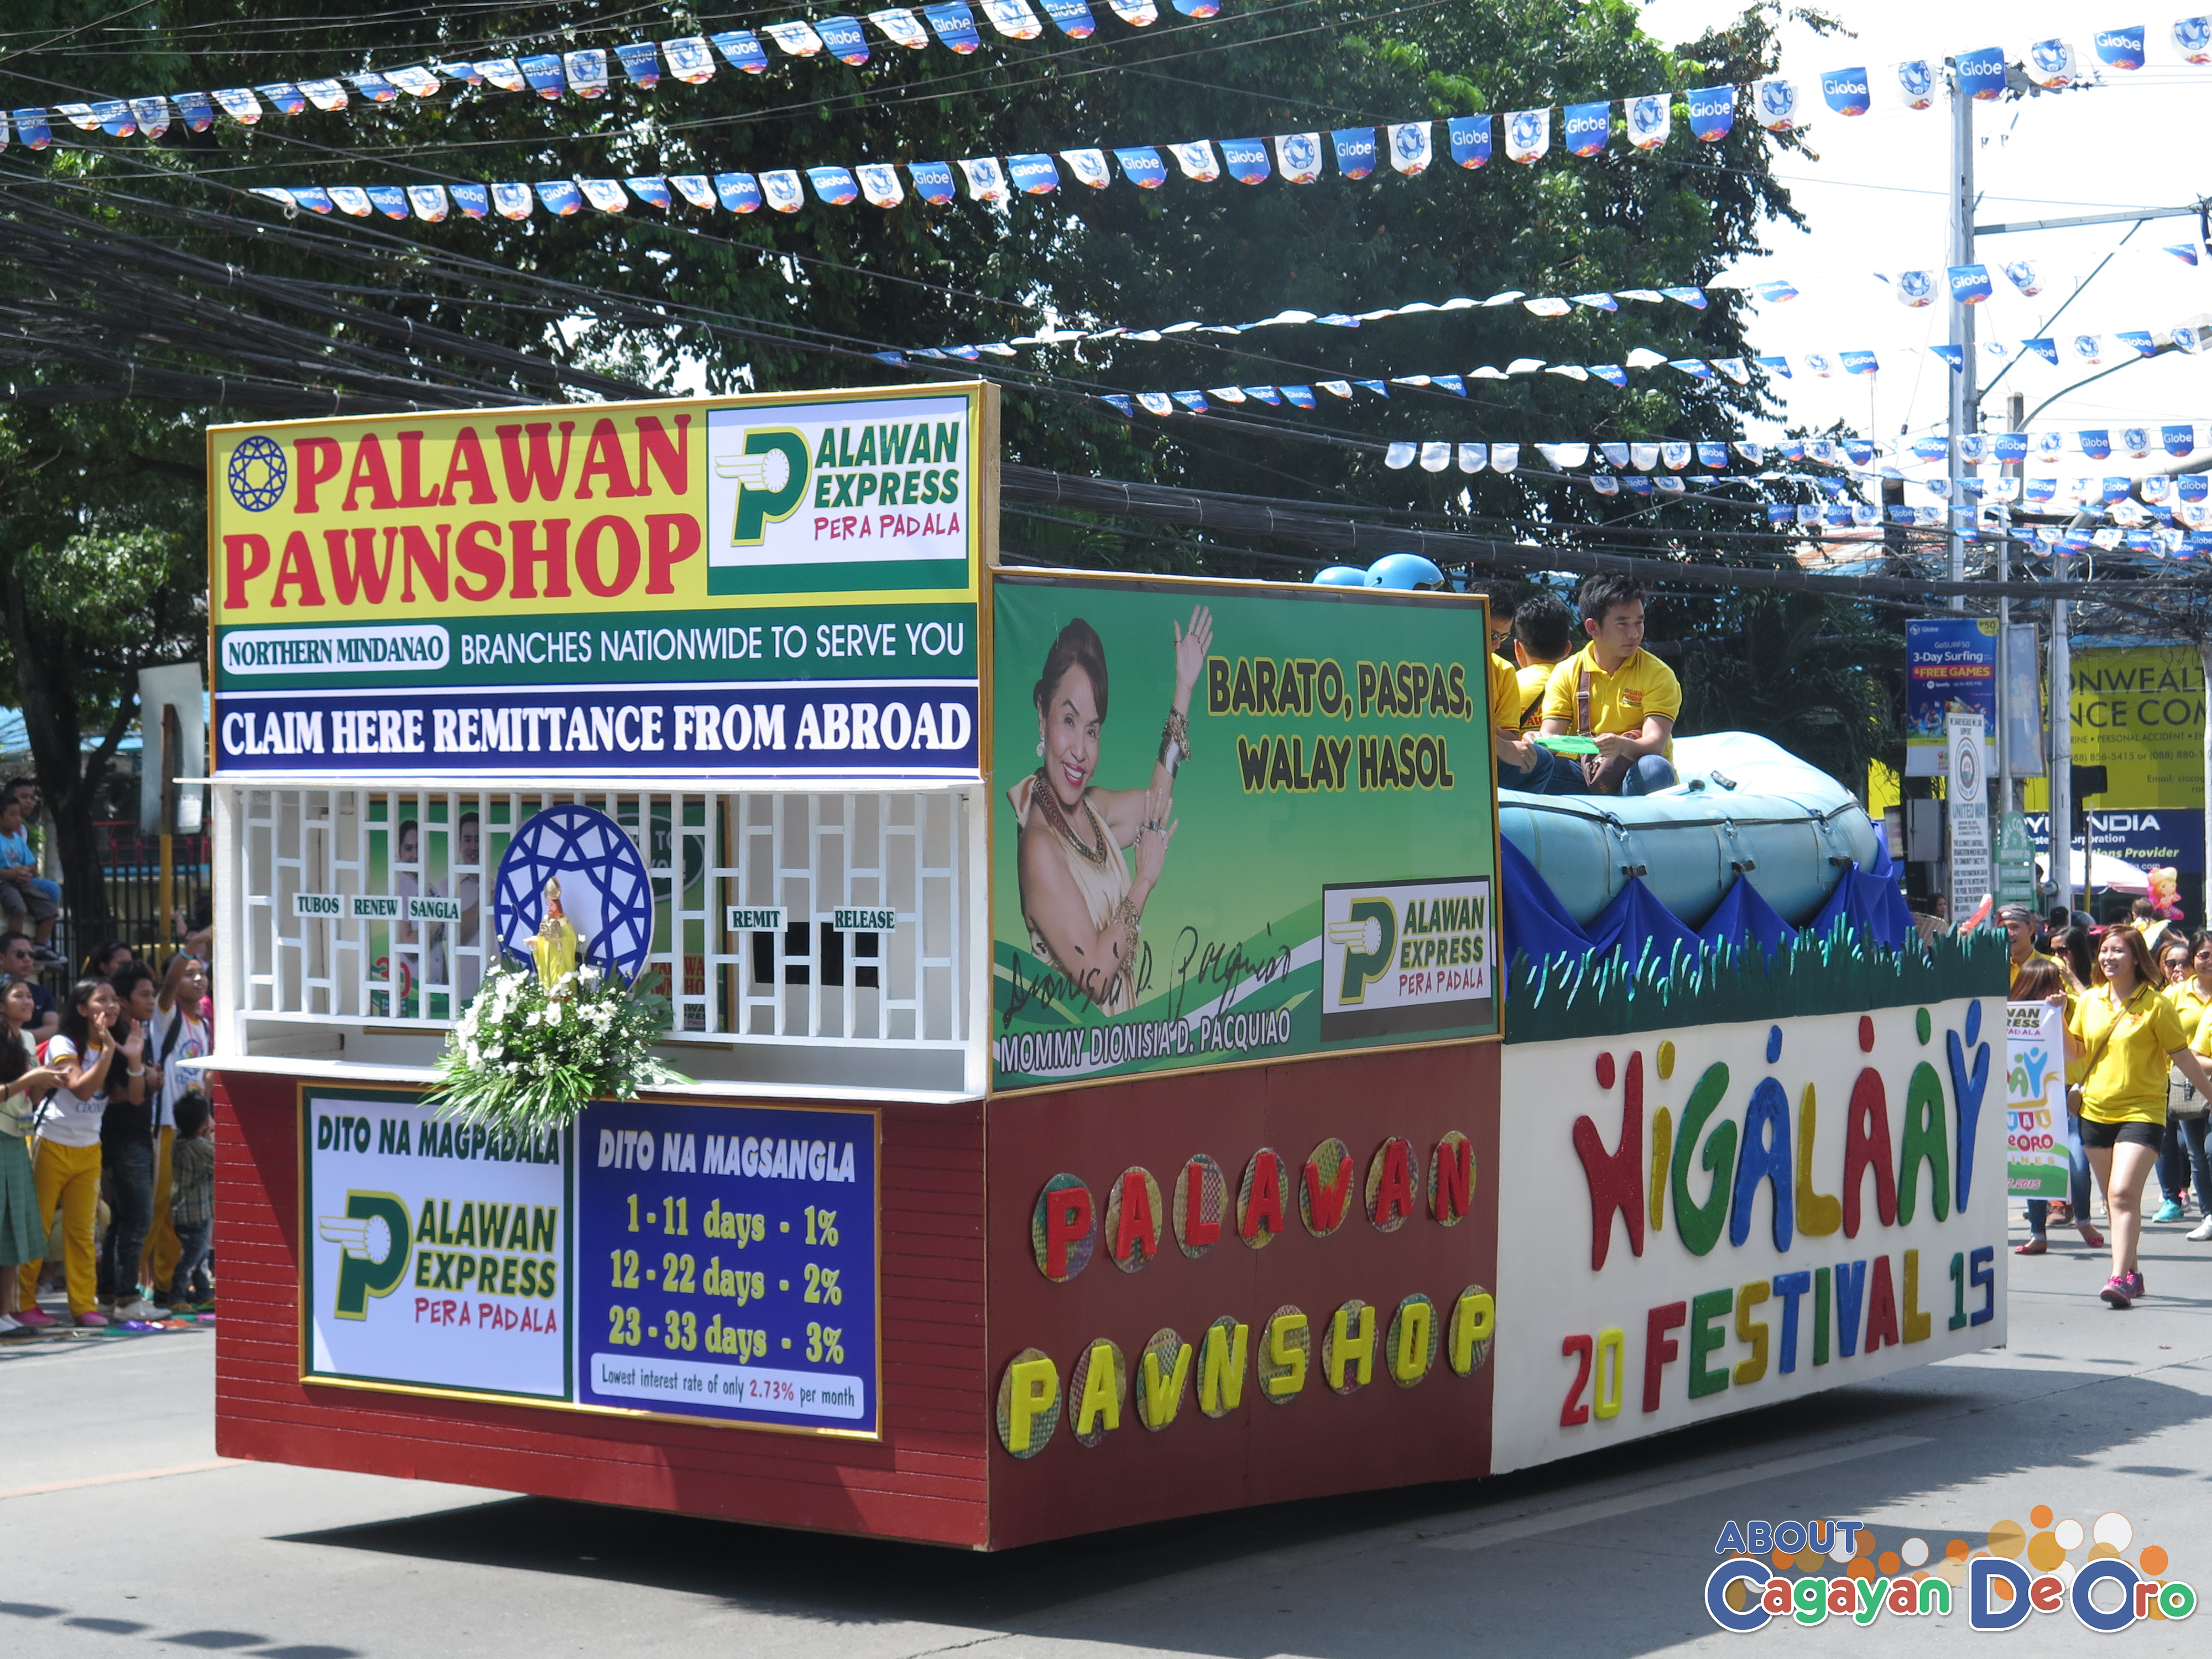 Palawan Pawnshop at Cagayan de Oro The Higalas Parade of Floats and Icons 2015